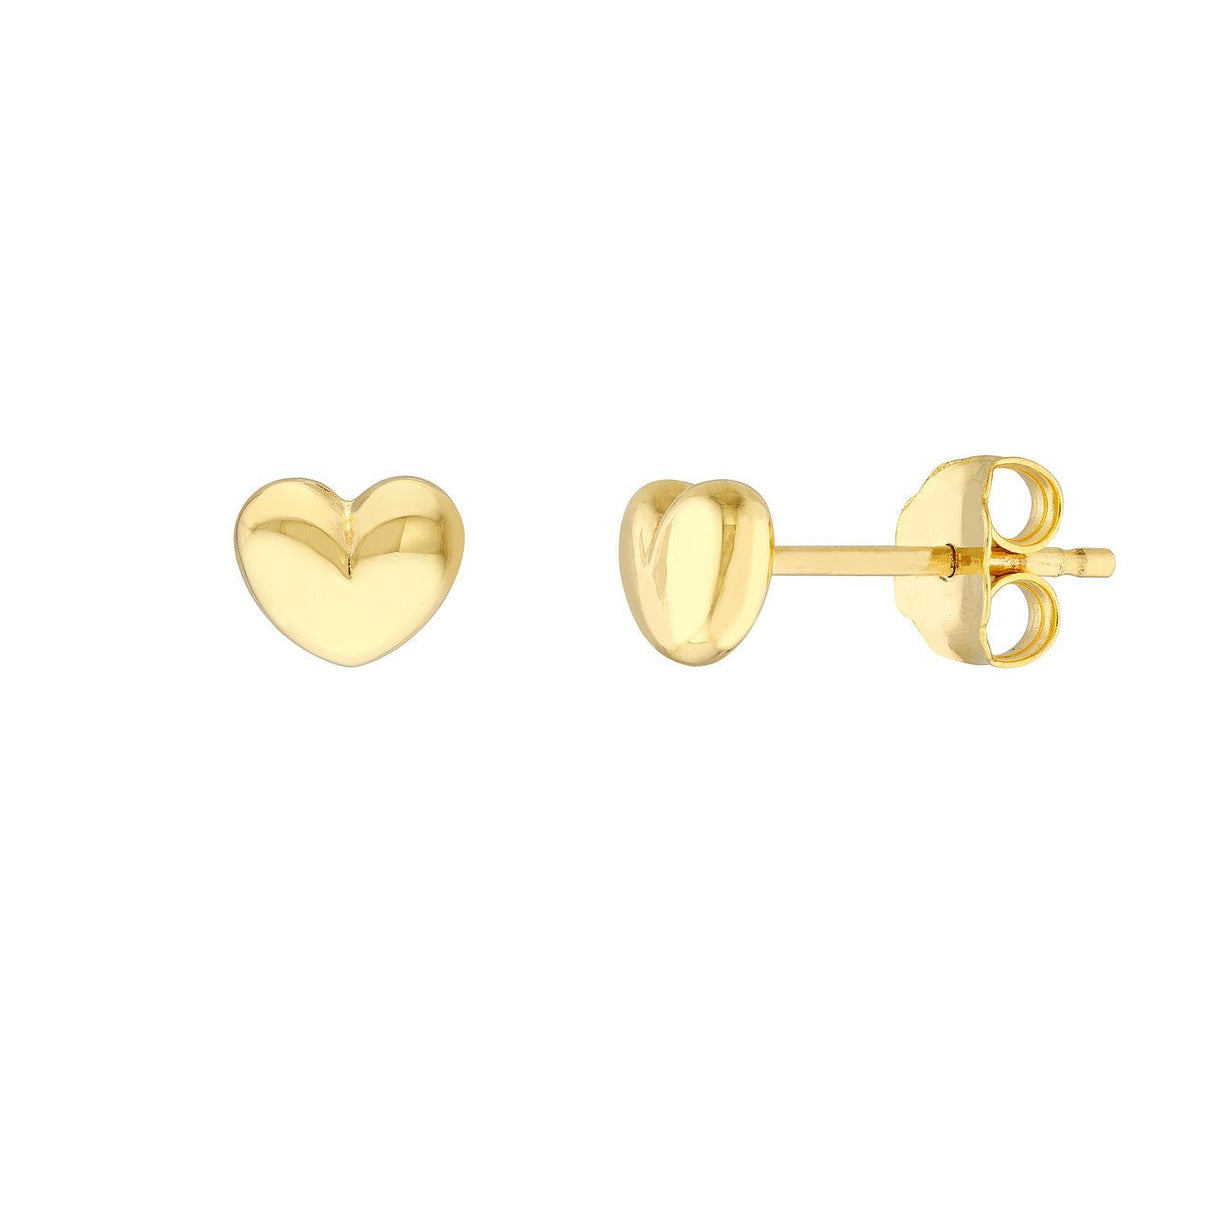 https://www.diamondorigin.us/cdn/shop/products/14k-gold-earrings-2023-collection-puffy-heart-stud-gold-earrings-on-post-back-239084.jpg?v=1691530065&width=1214